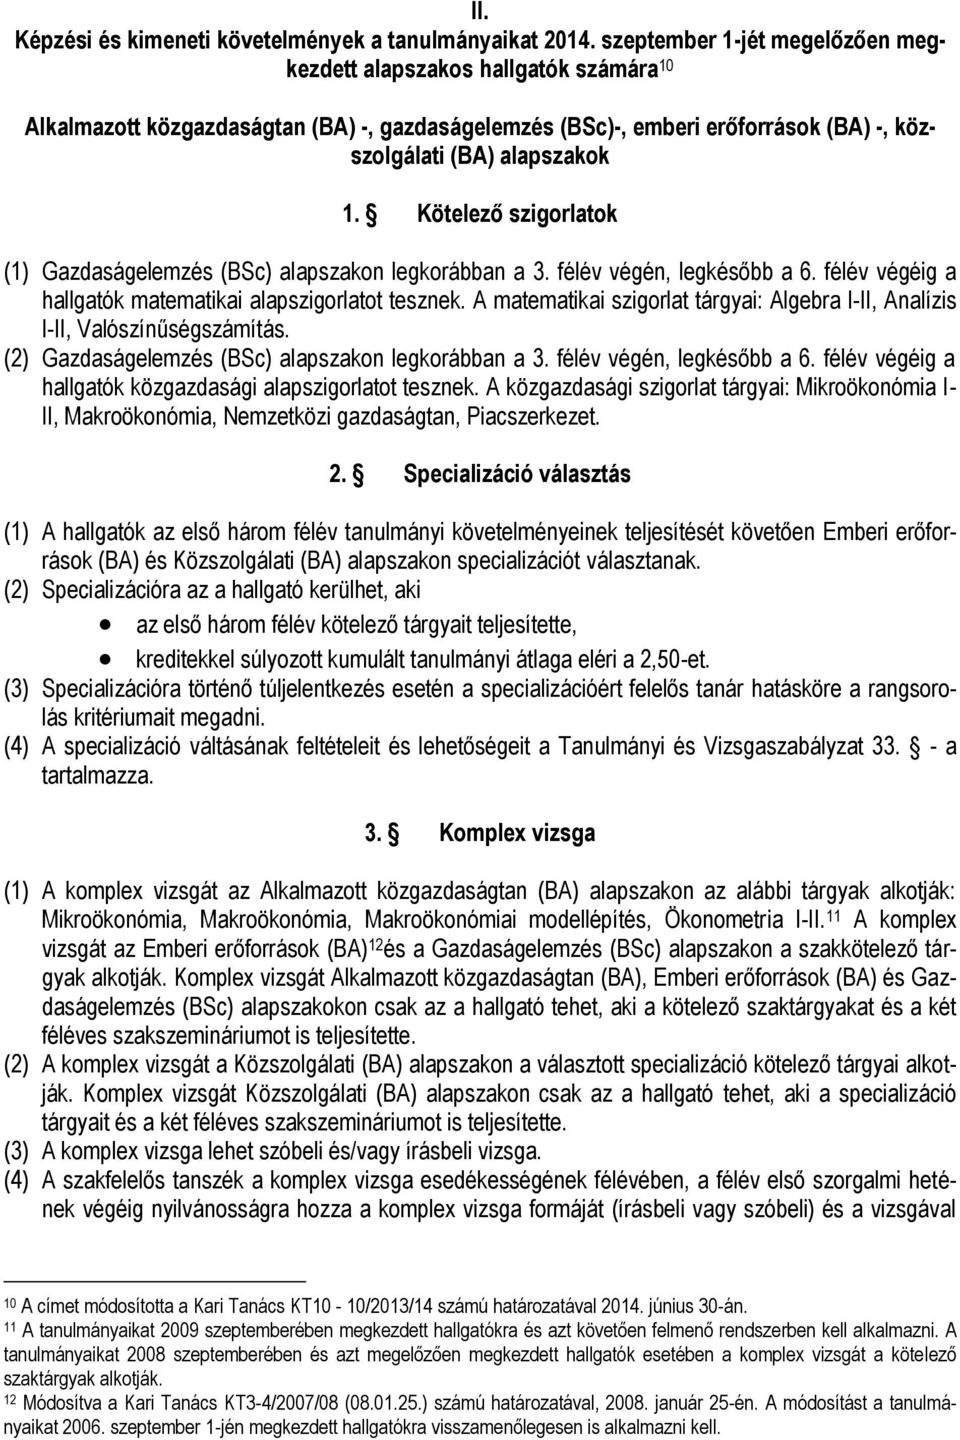 Tanulmányi és Vizsgaszabályzat Közgazdaságtudományi Kar Melléklet  1,2,3,4,5,6,7 - PDF Free Download